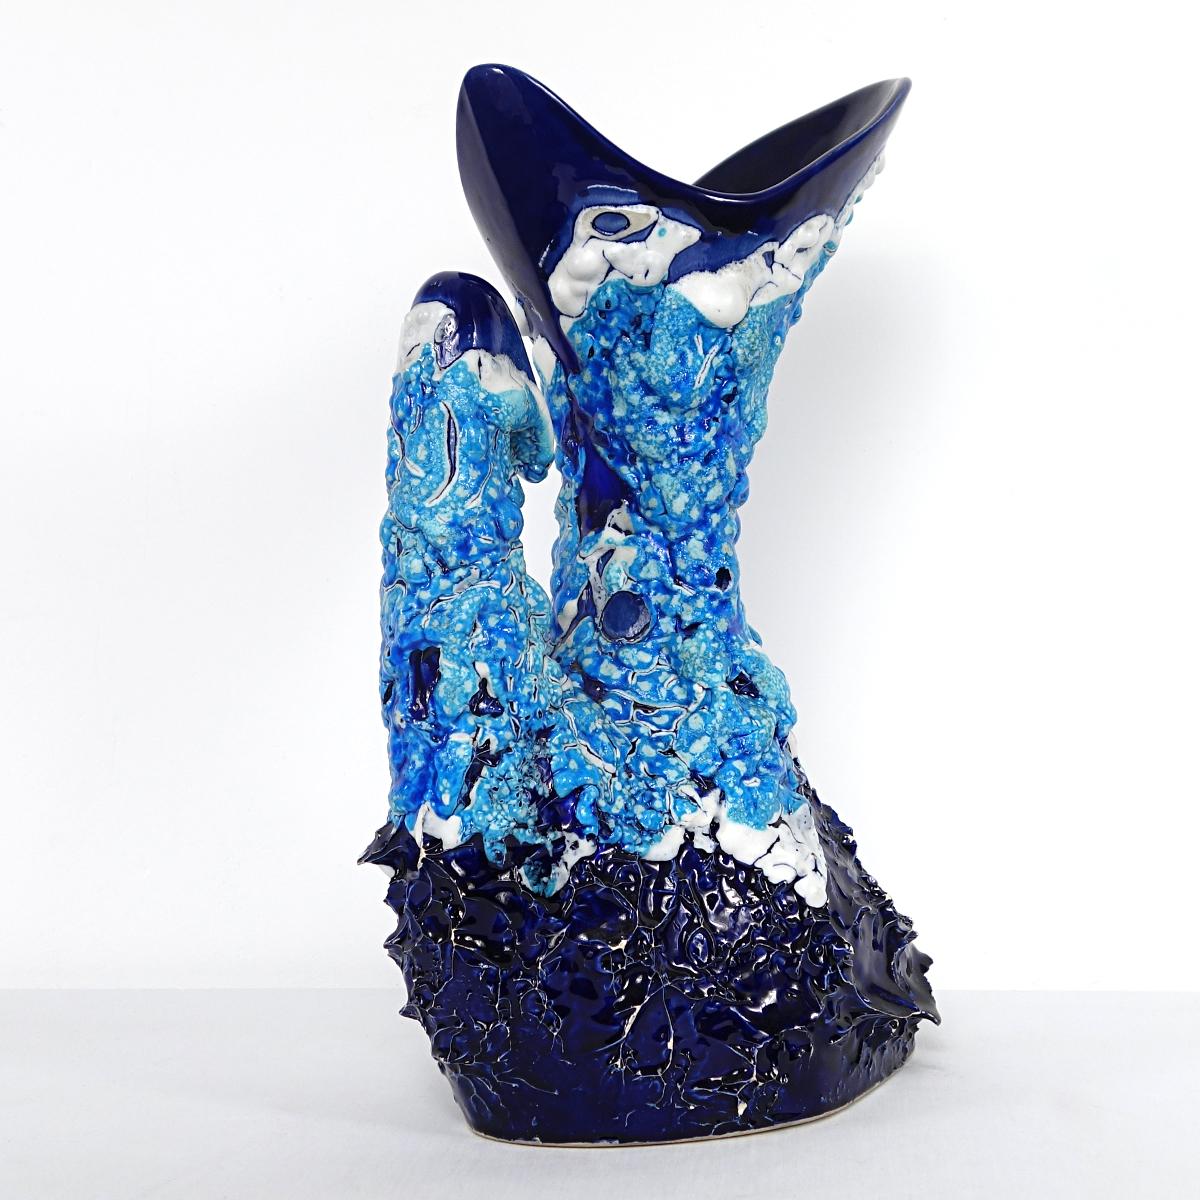 Avec sa hauteur de 40 cm, sa forme magique et ses couleurs bleues attrayantes, ce vase sort vraiment du lot.
1950s. Signé Vallauris.